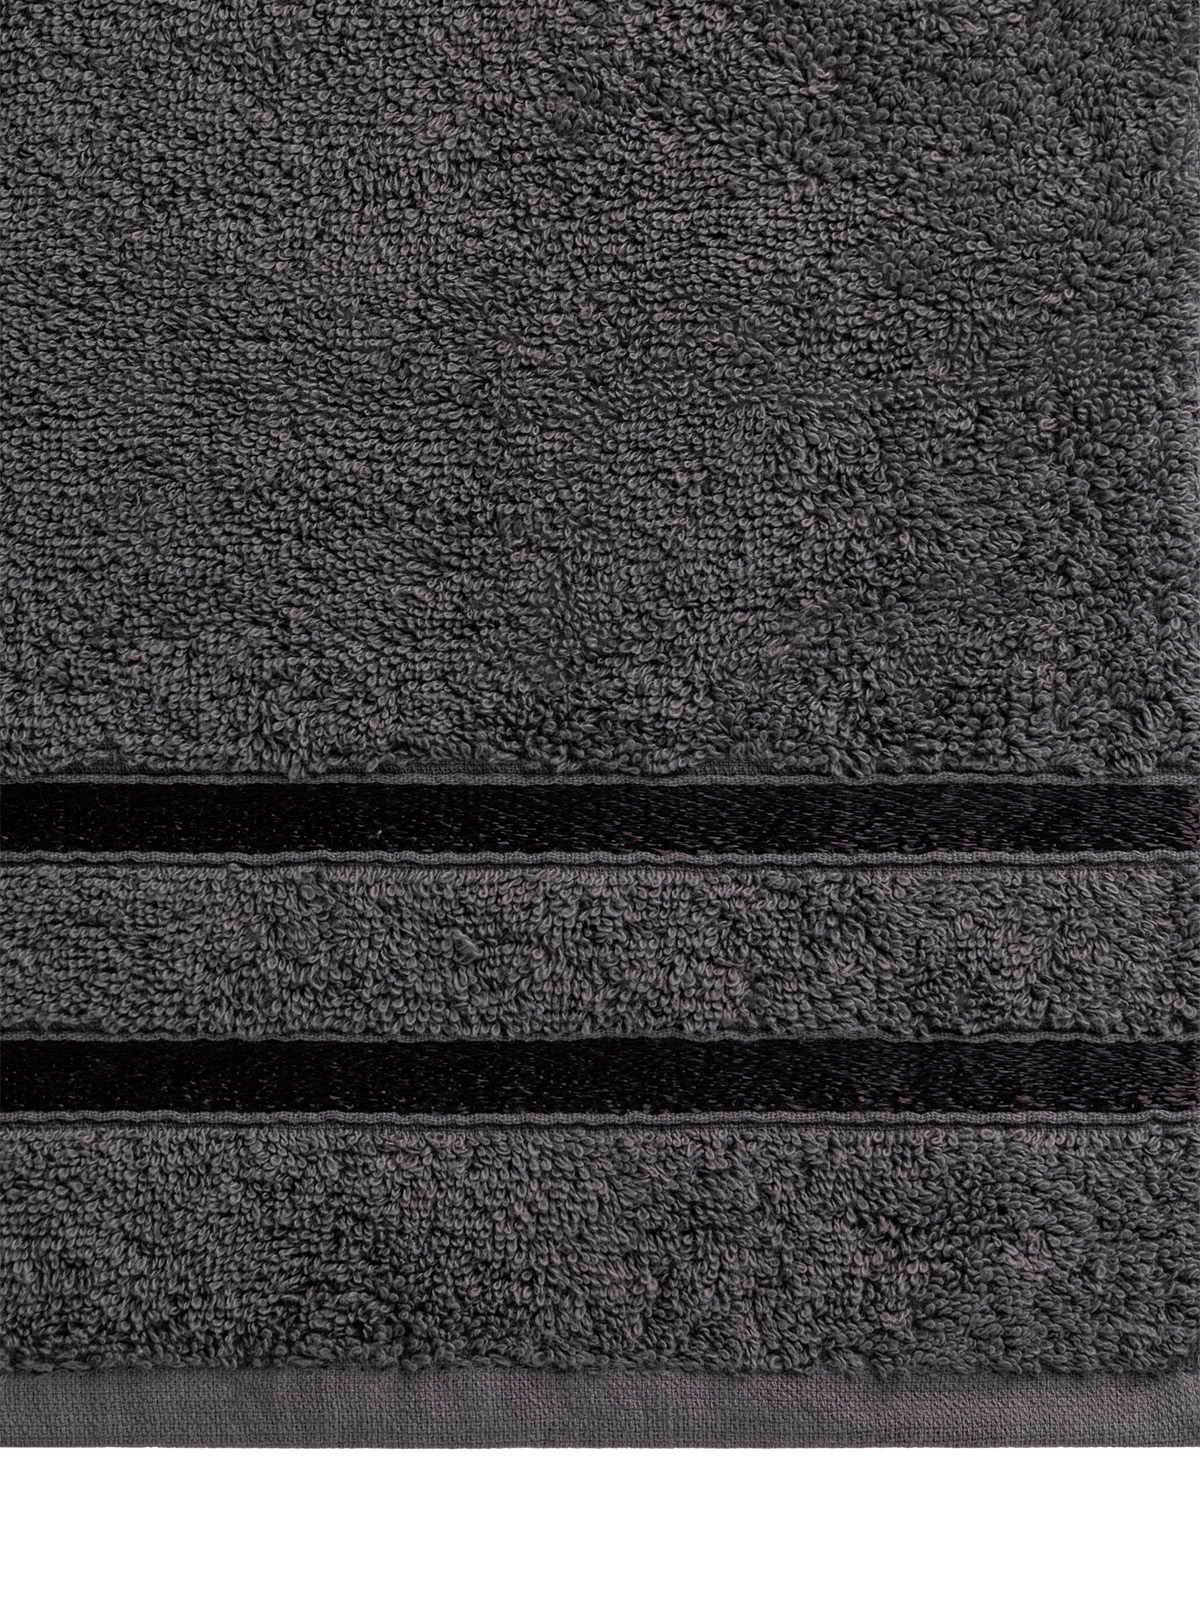 Полотенце махровое LUCKY с лентой 50x90 см 100% хлопок тёмно-серый D100323 - фото 4